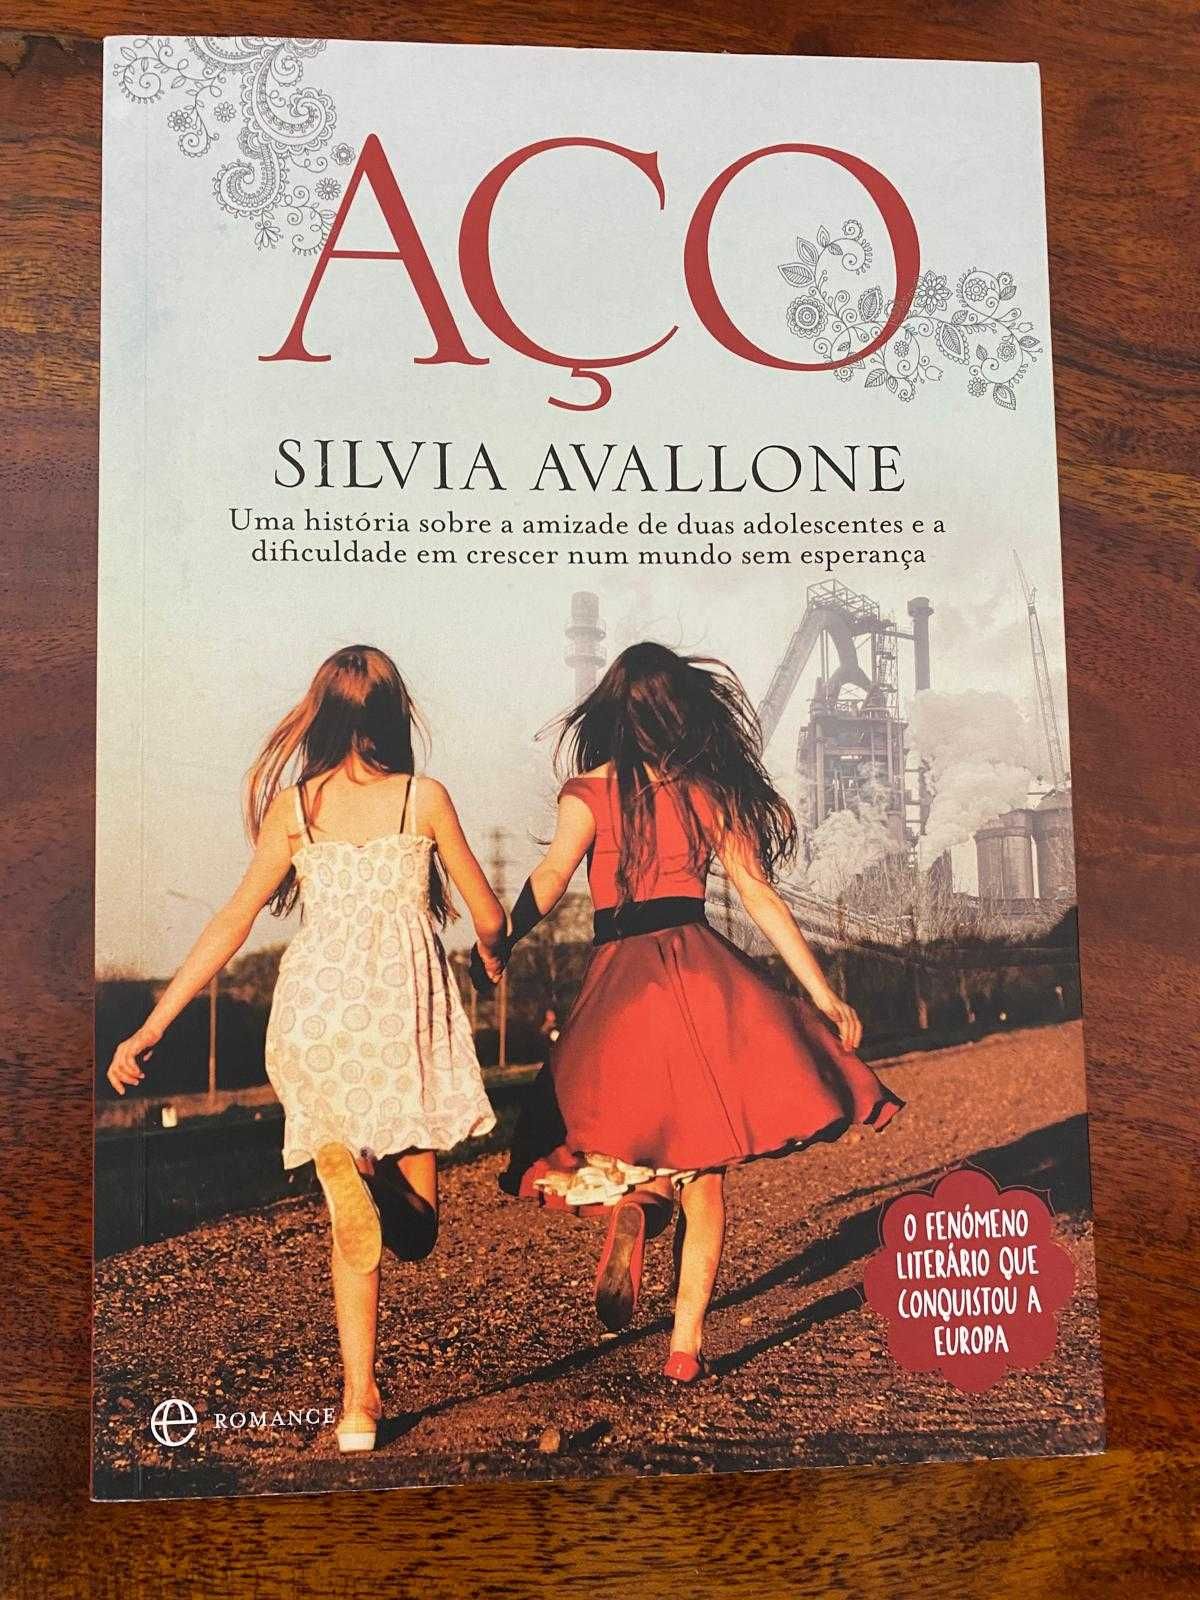 Aço de Silvia Avallone - livro Novo envio gratis